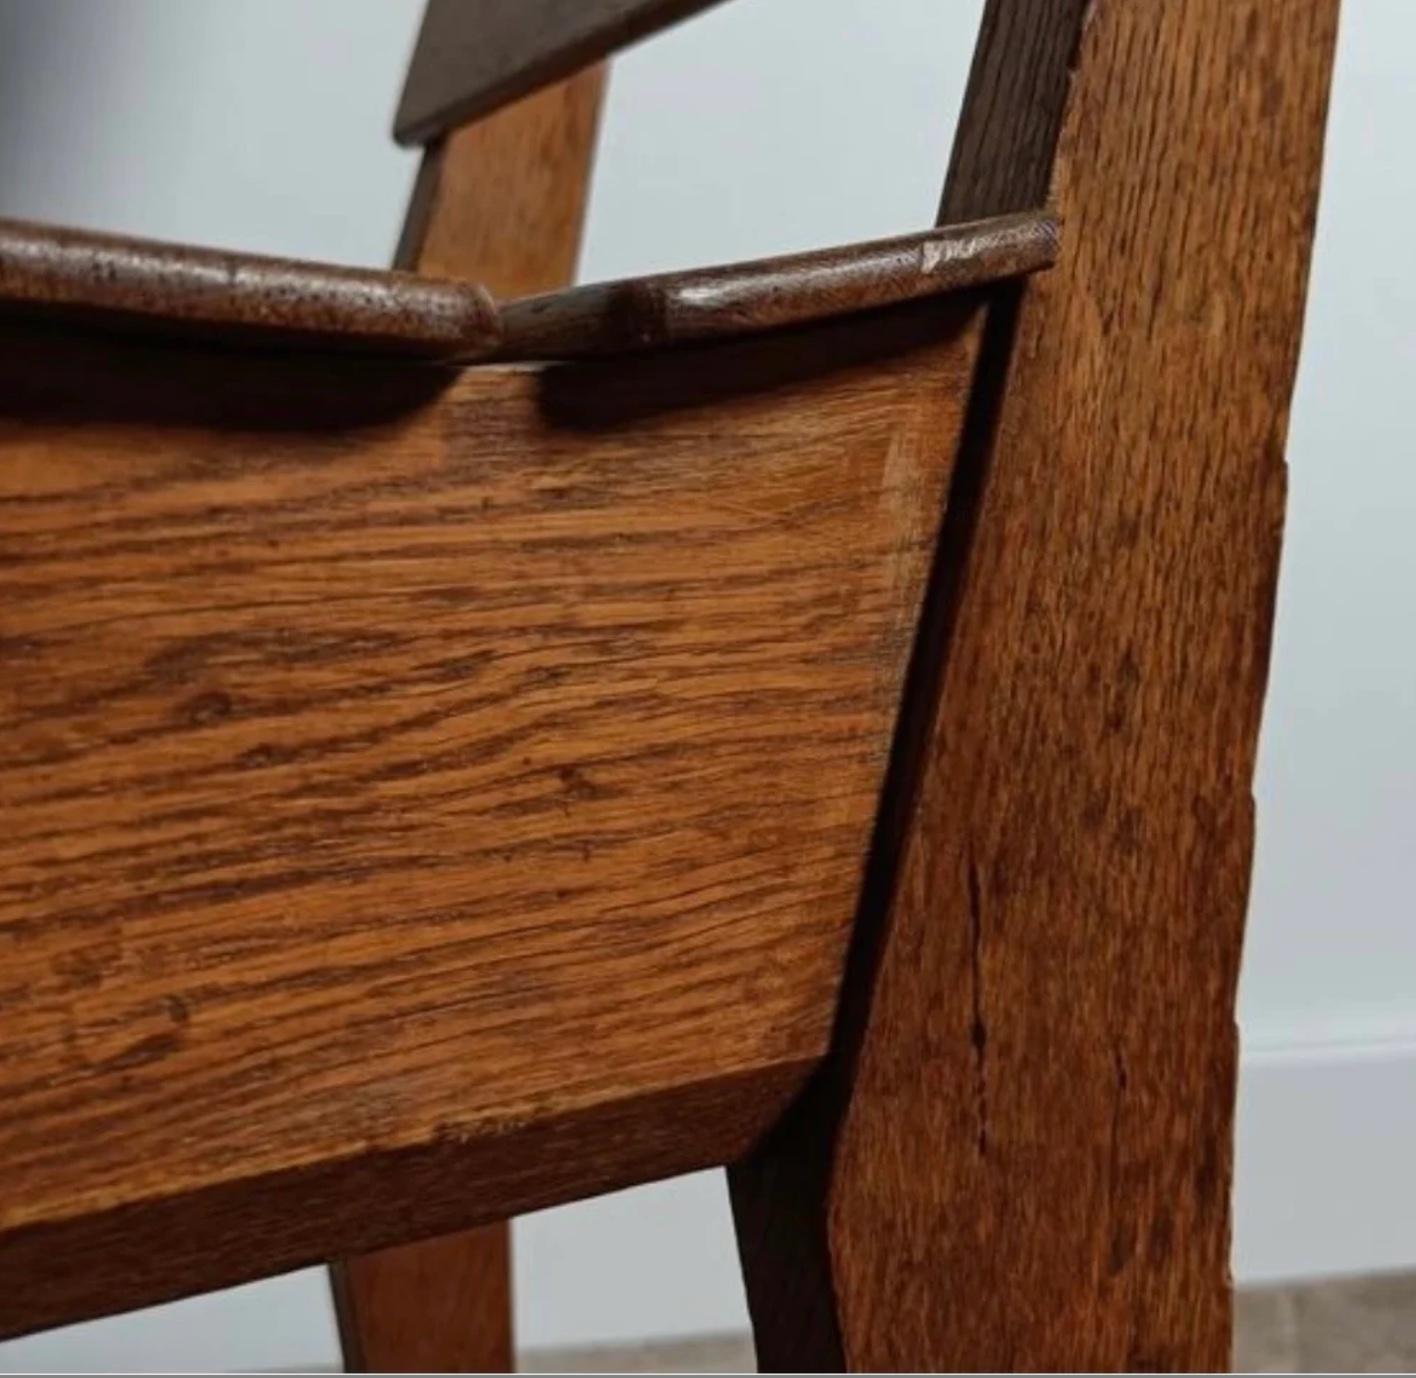 Ein Paar Lattenstühle aus der Den Haagse-Schule in den Niederlanden. Die Stühle sind eine wichtige Stätte des niederländischen Modernismus und spiegeln das Ethos der Schule wider, das auf einem stromlinienförmigen Minimalismus beruht.